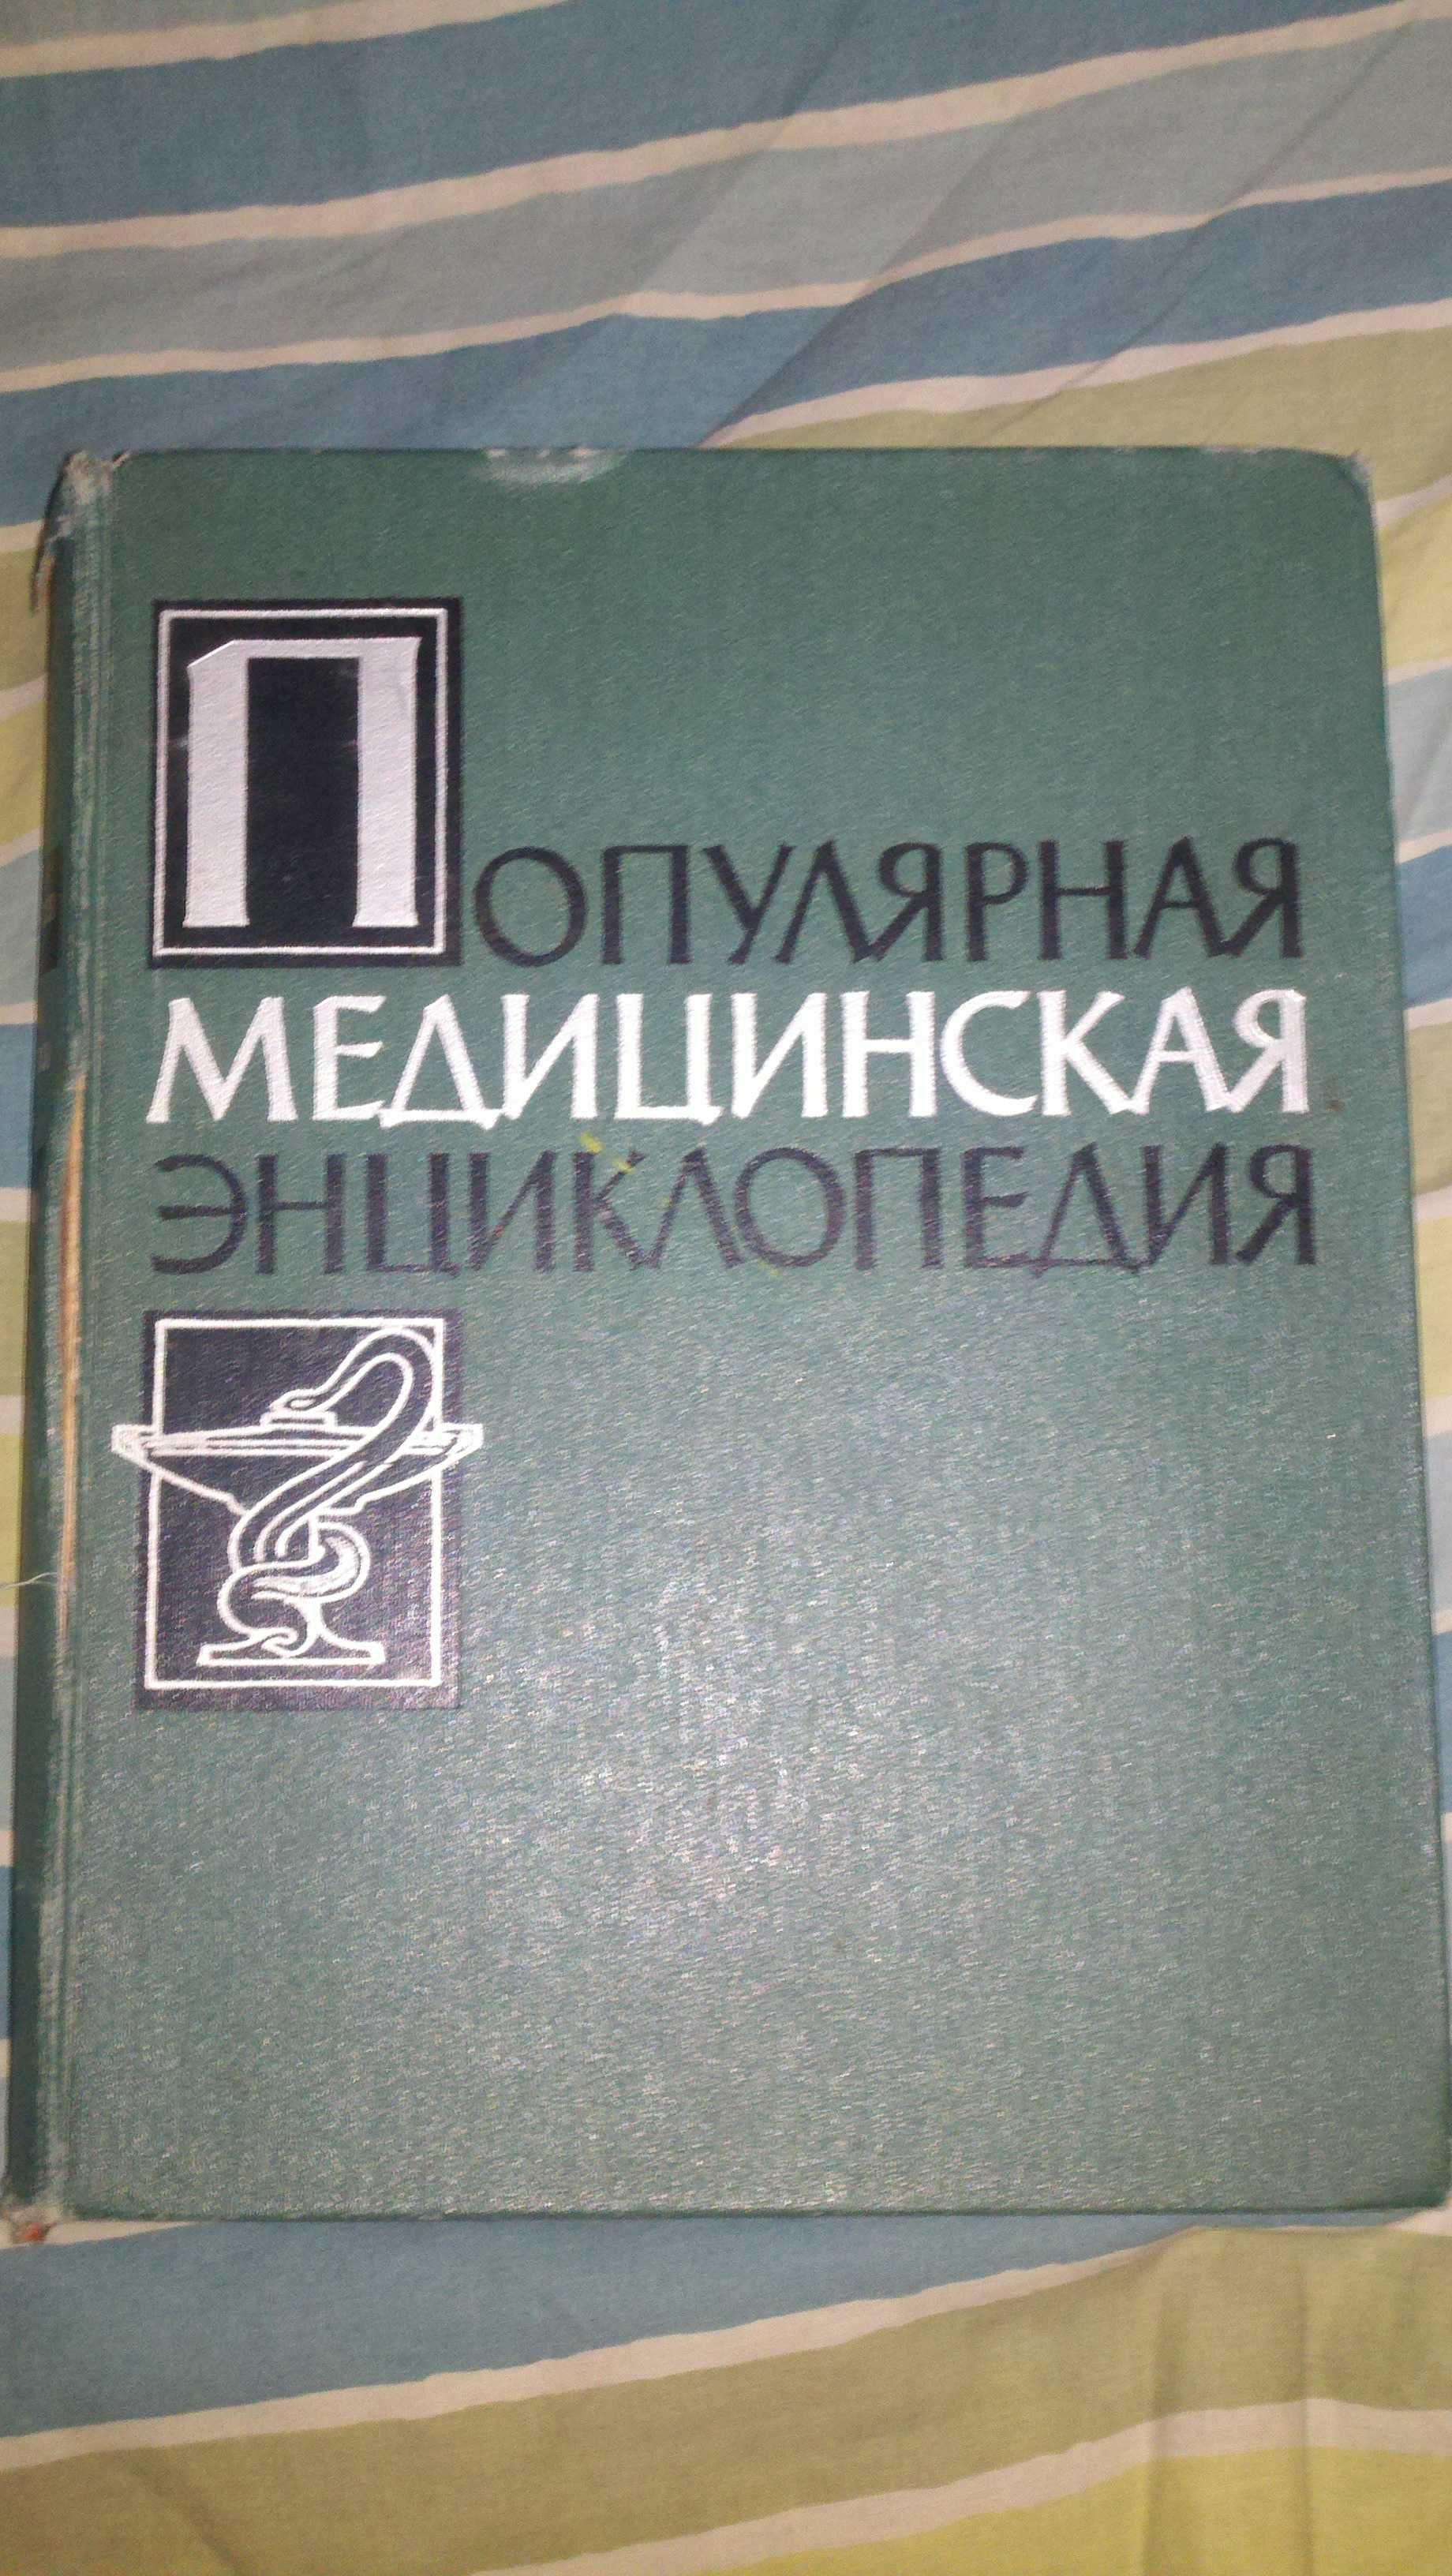 Популярная медицинская энциклопедия.Бакулев А.Н.,Петров Ф.Н. 1961г.